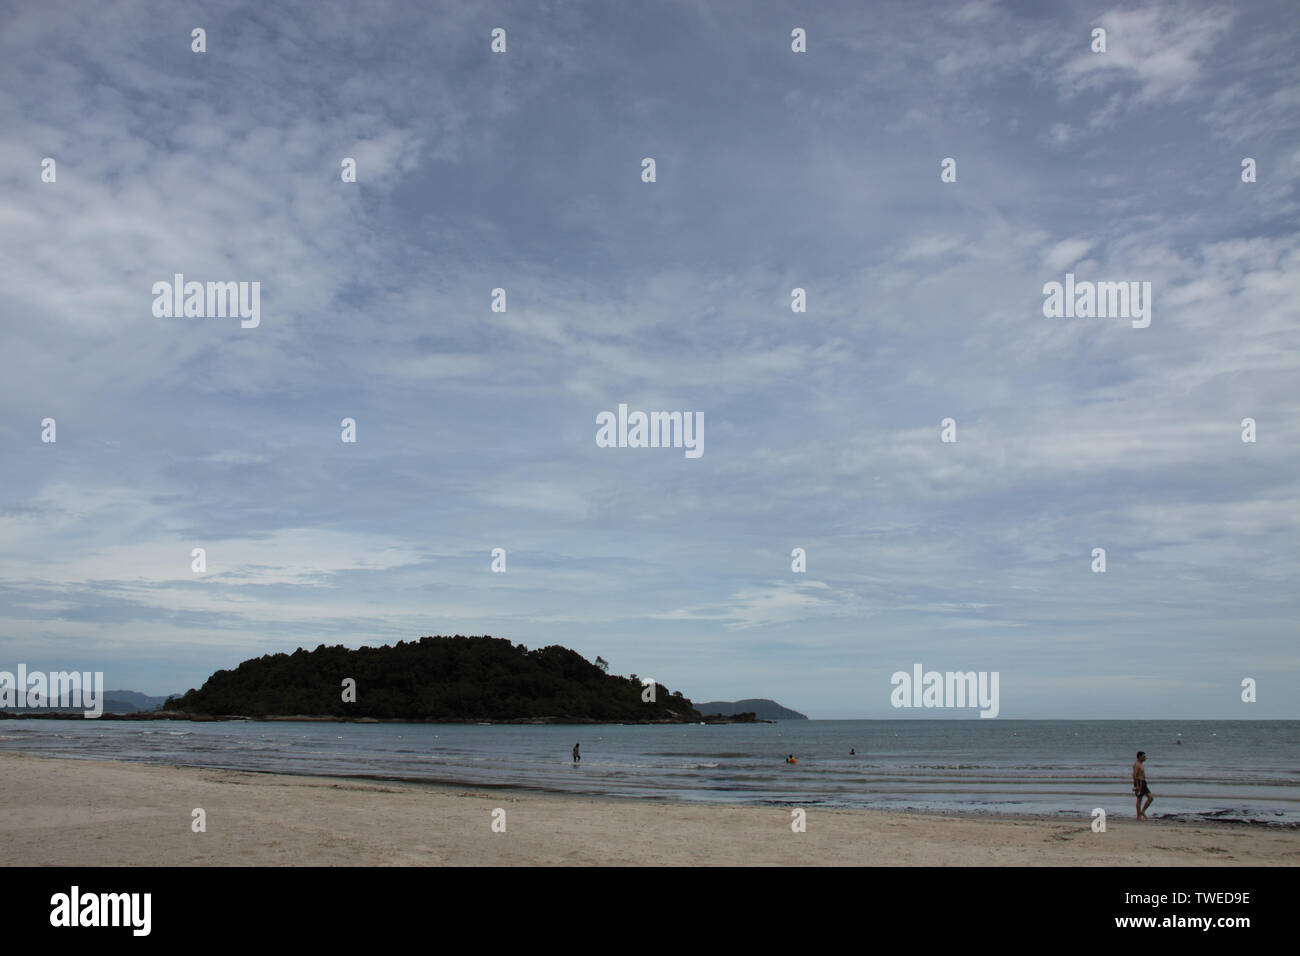 Island in the sea, Langkawi Island, Malaysia Stock Photo